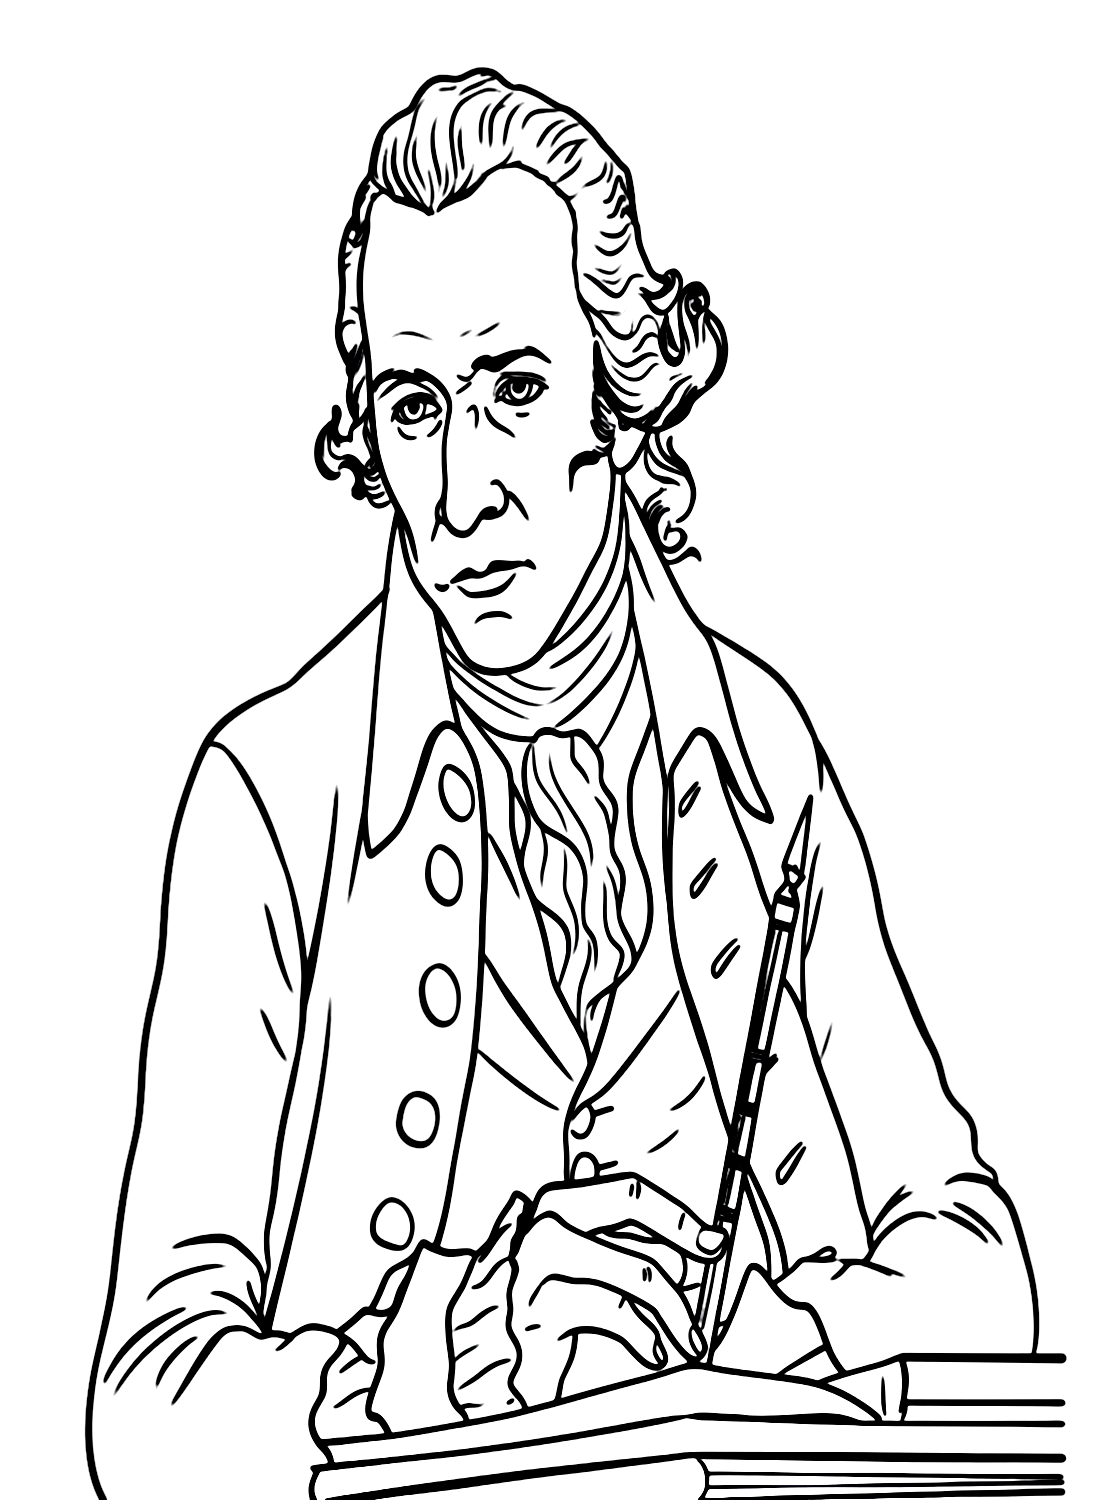 Retratar a Hamilton de Alexander Hamilton